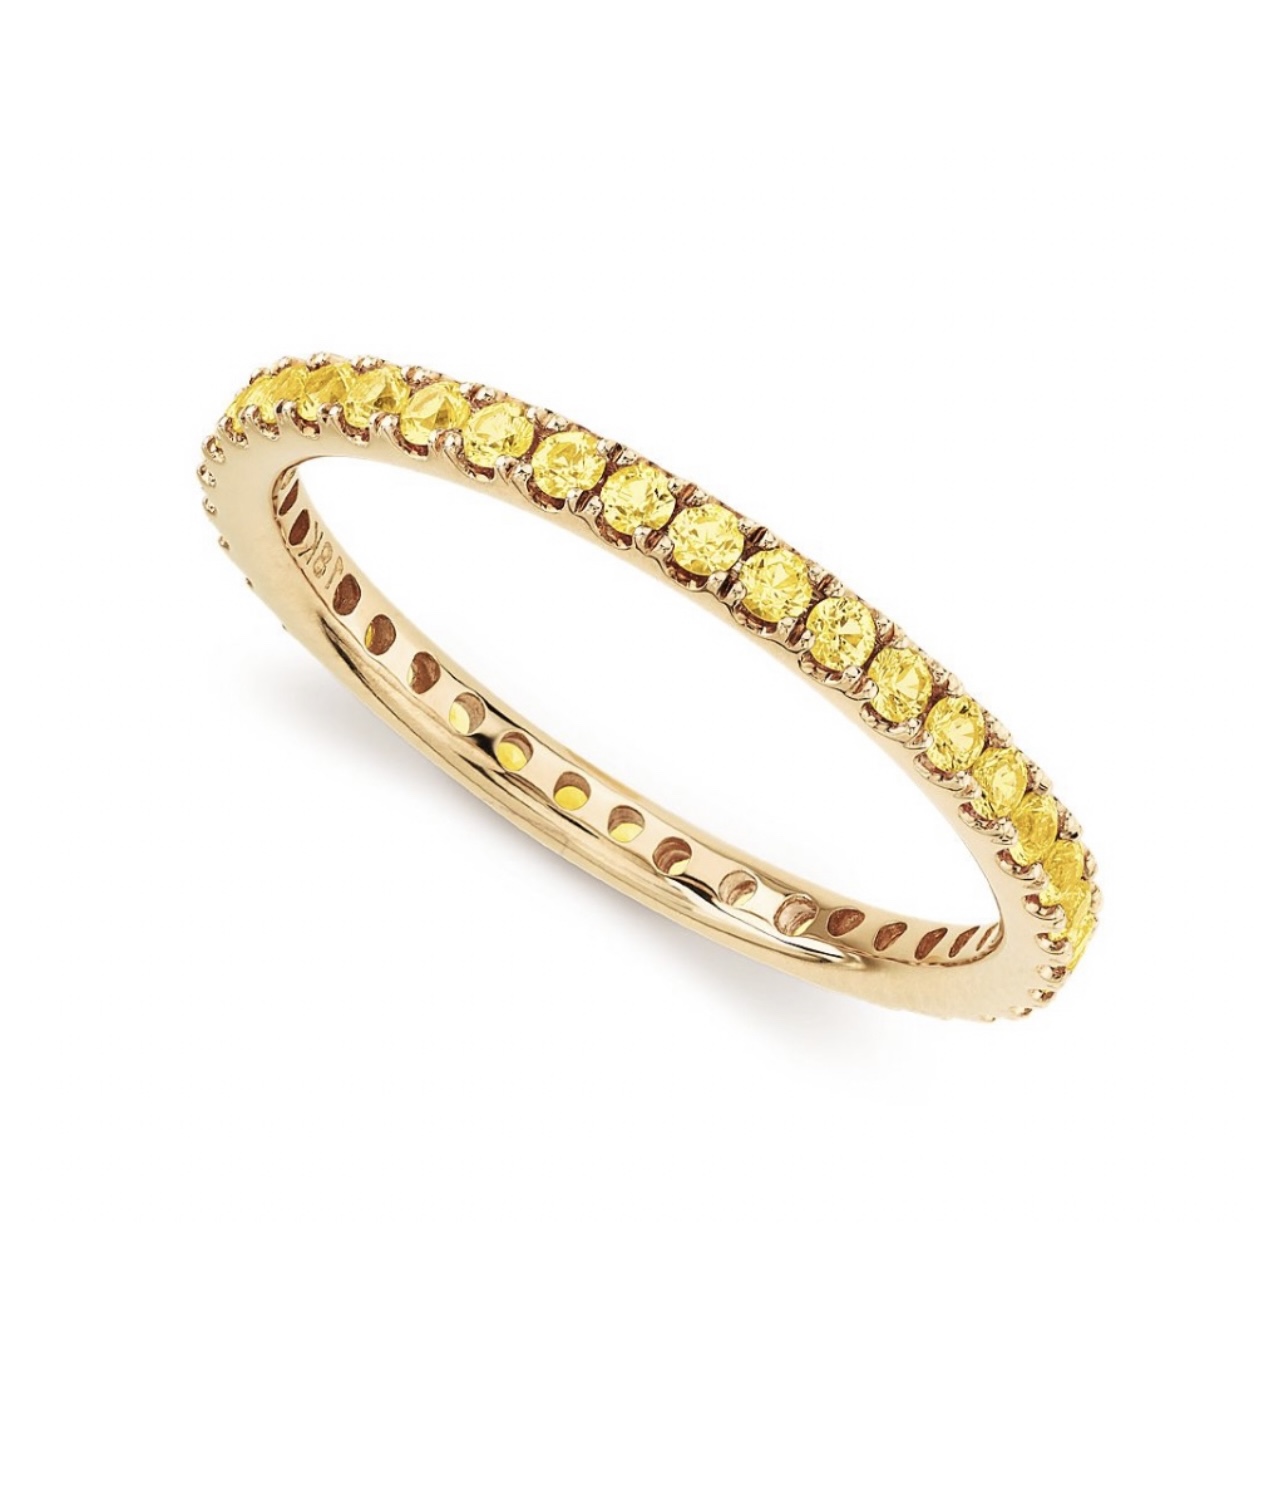 Обручальное кольцо с жёлтыми сапфирами(0,494 ct.) из золота 750 пробы 